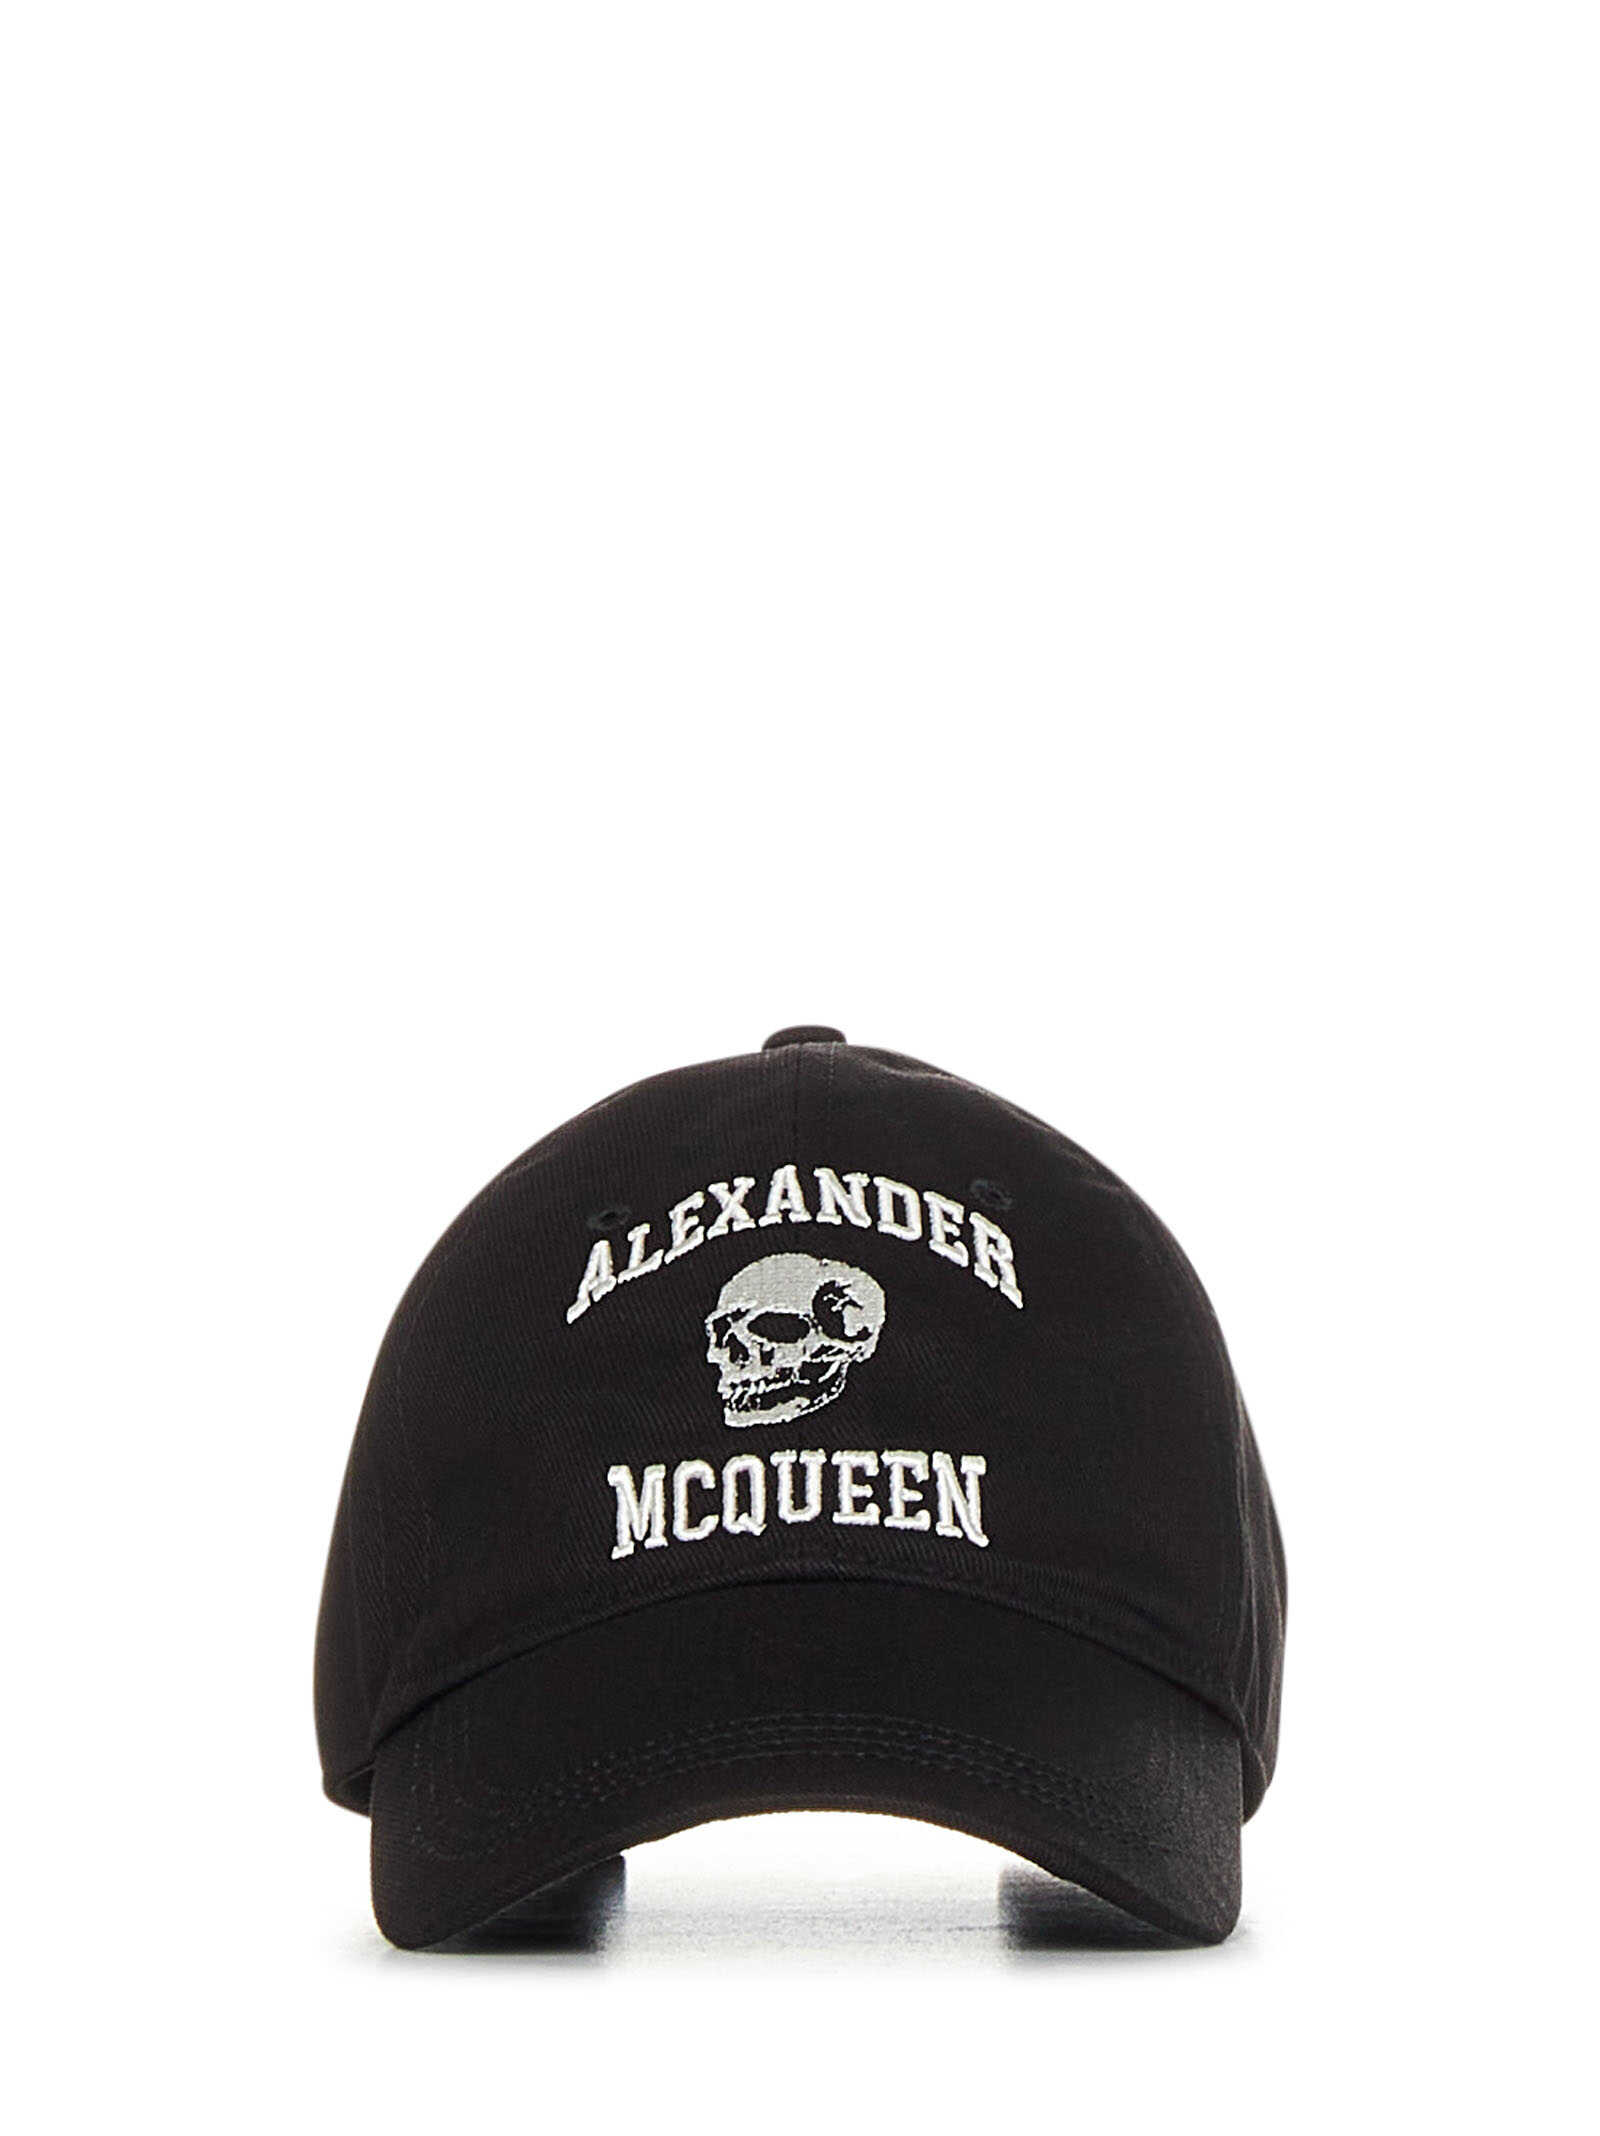 Alexander McQueen Alexander Mcqueen Hats Black Black